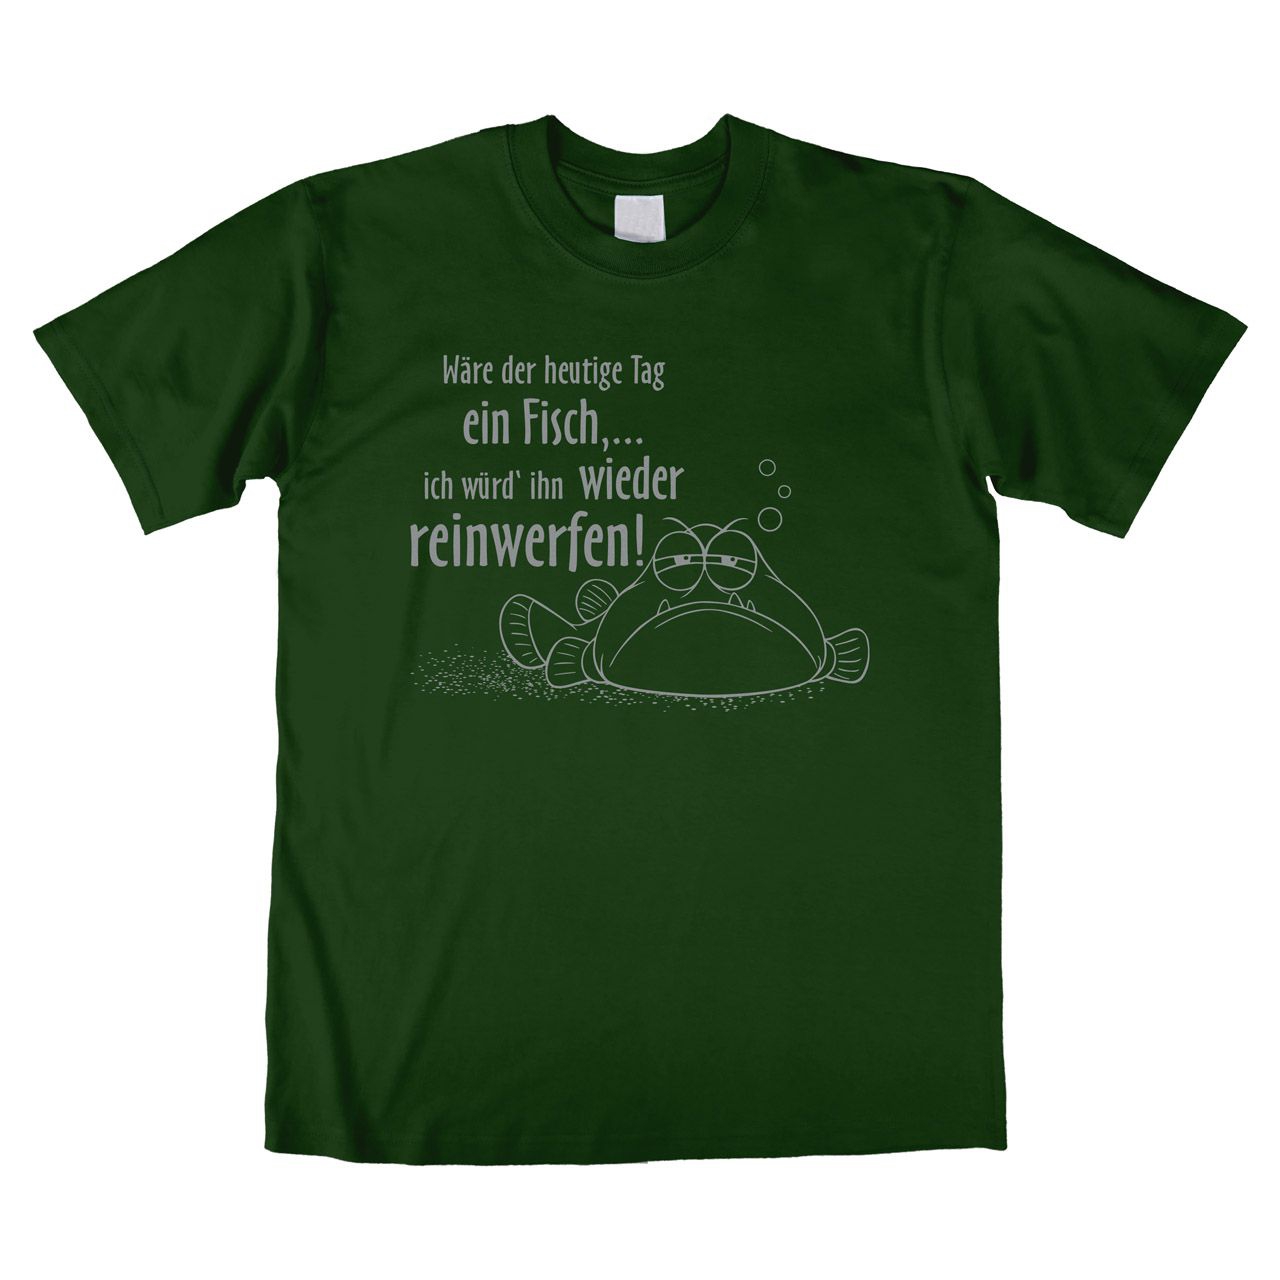 Wäre der heutige Tag ein Fisch Unisex T-Shirt dunkelgrün Medium